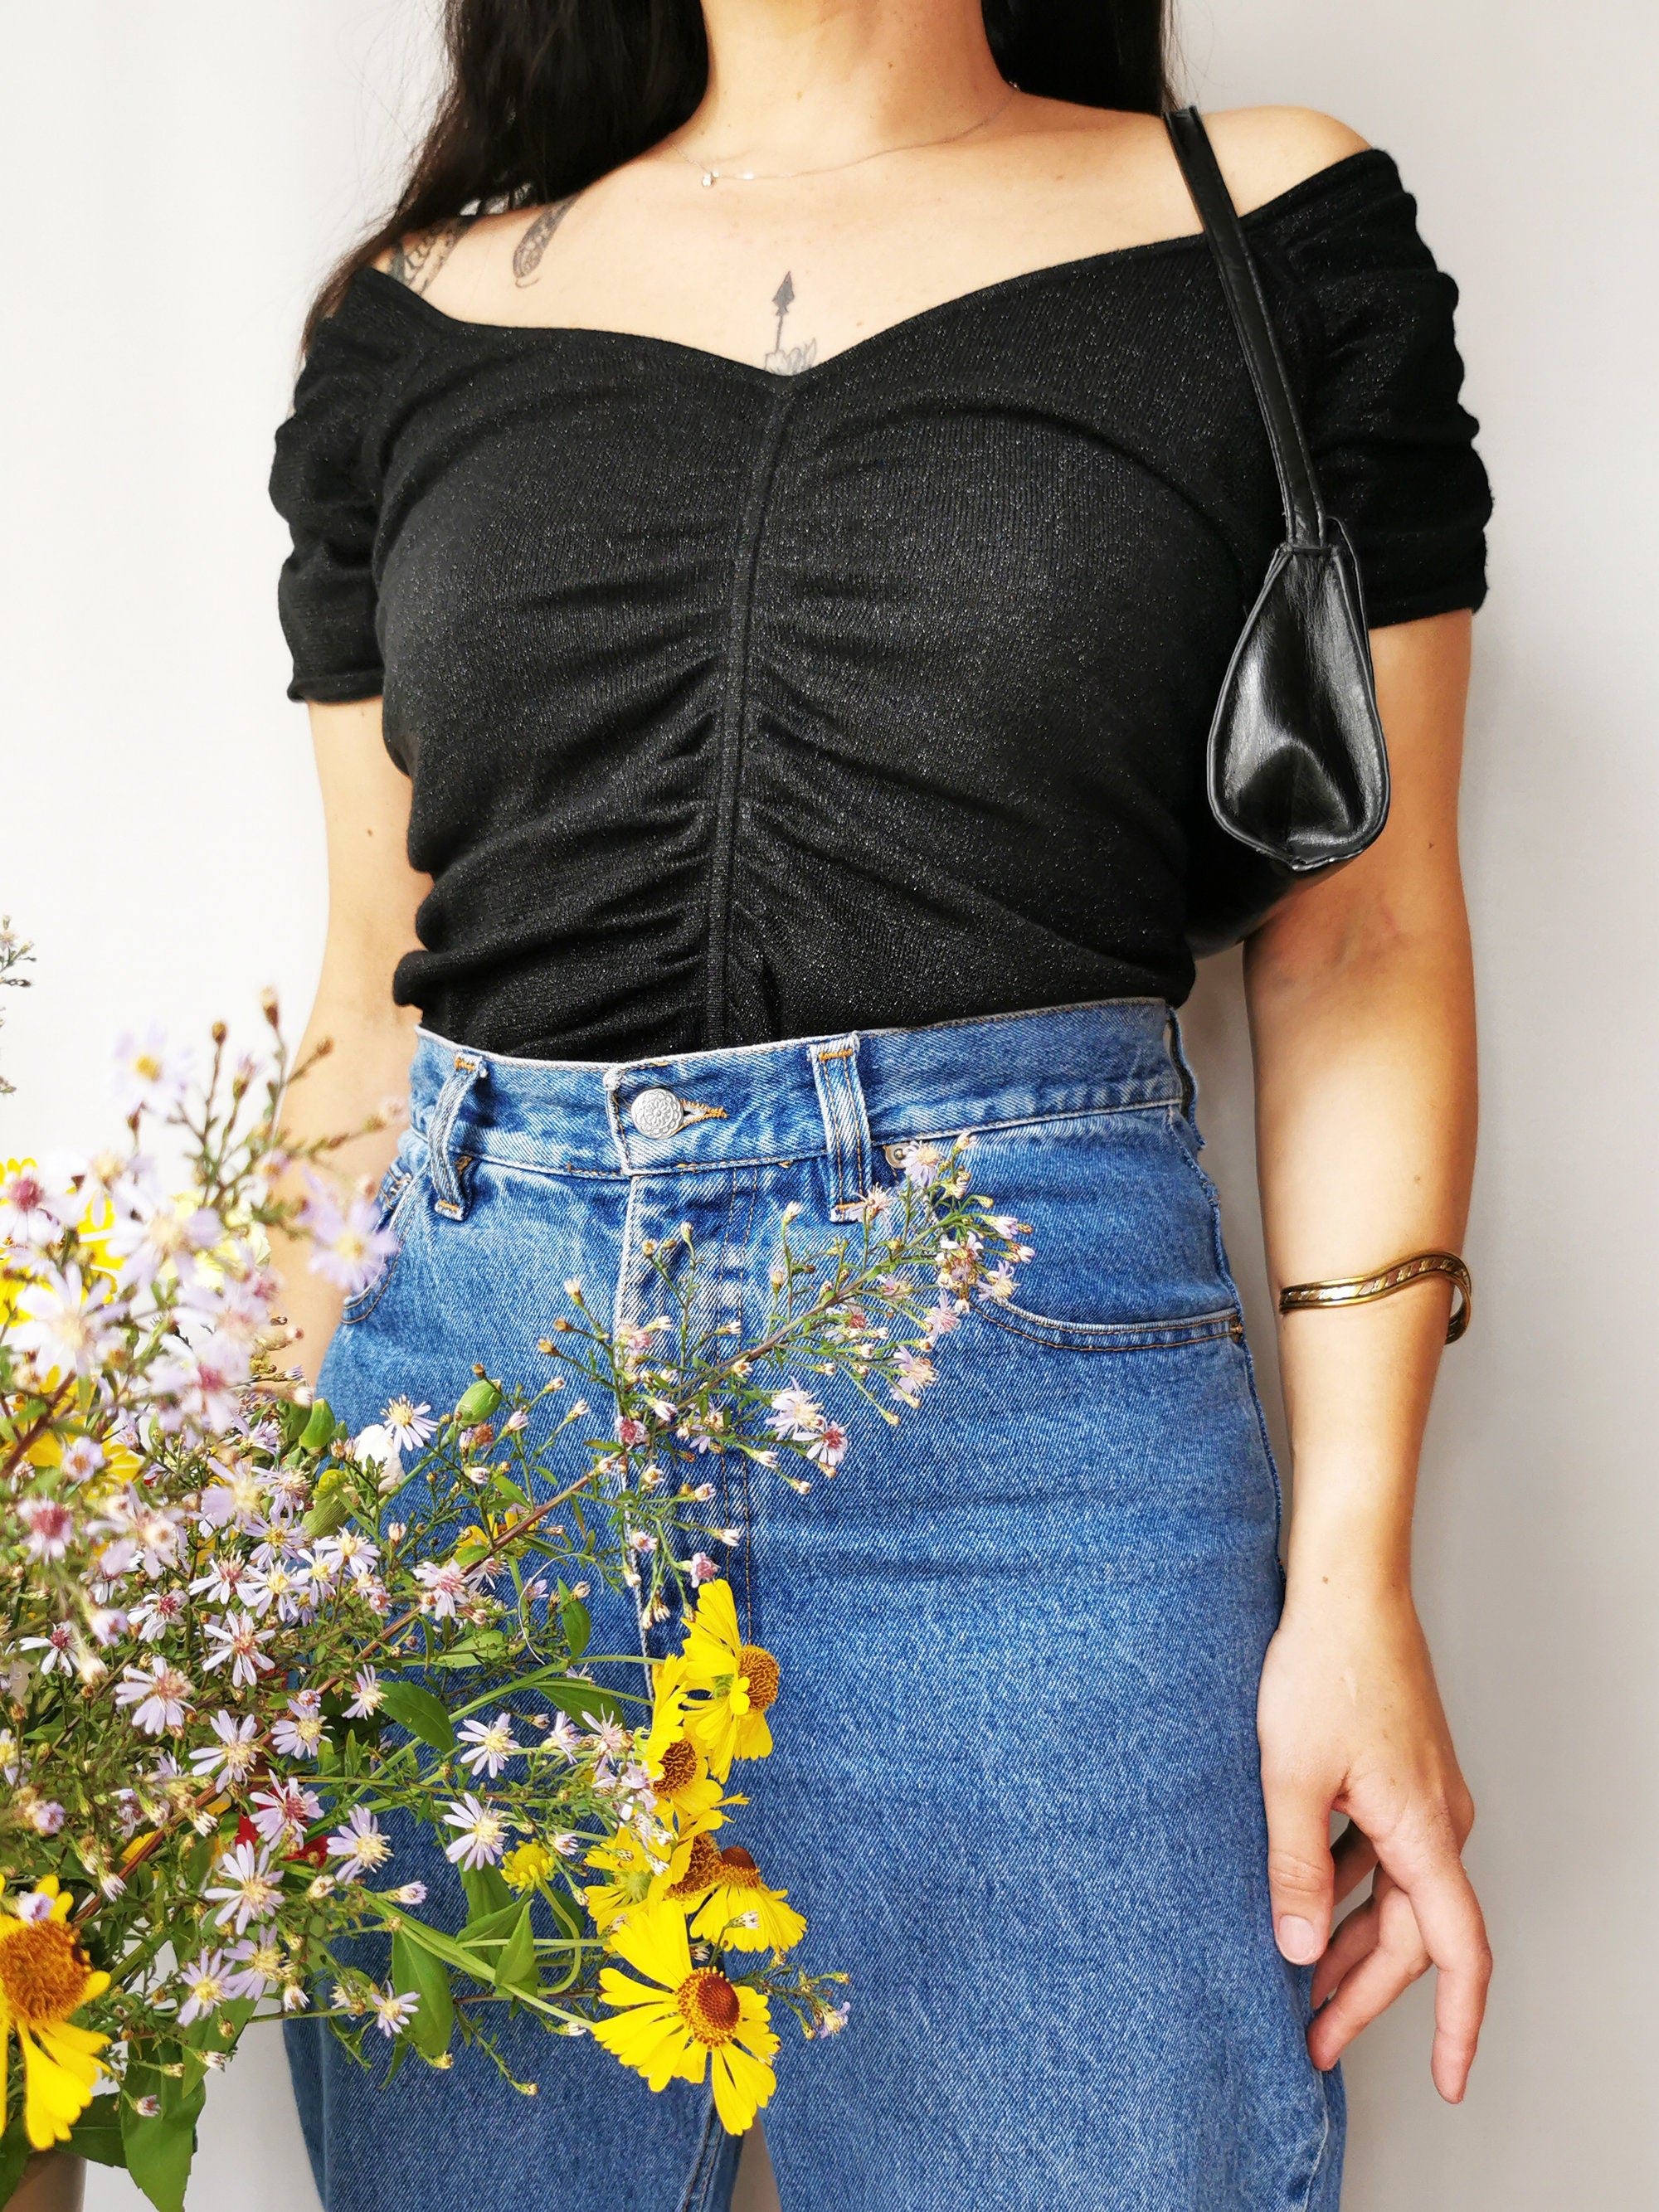 Vintage 90s black shimmer knit top blouse